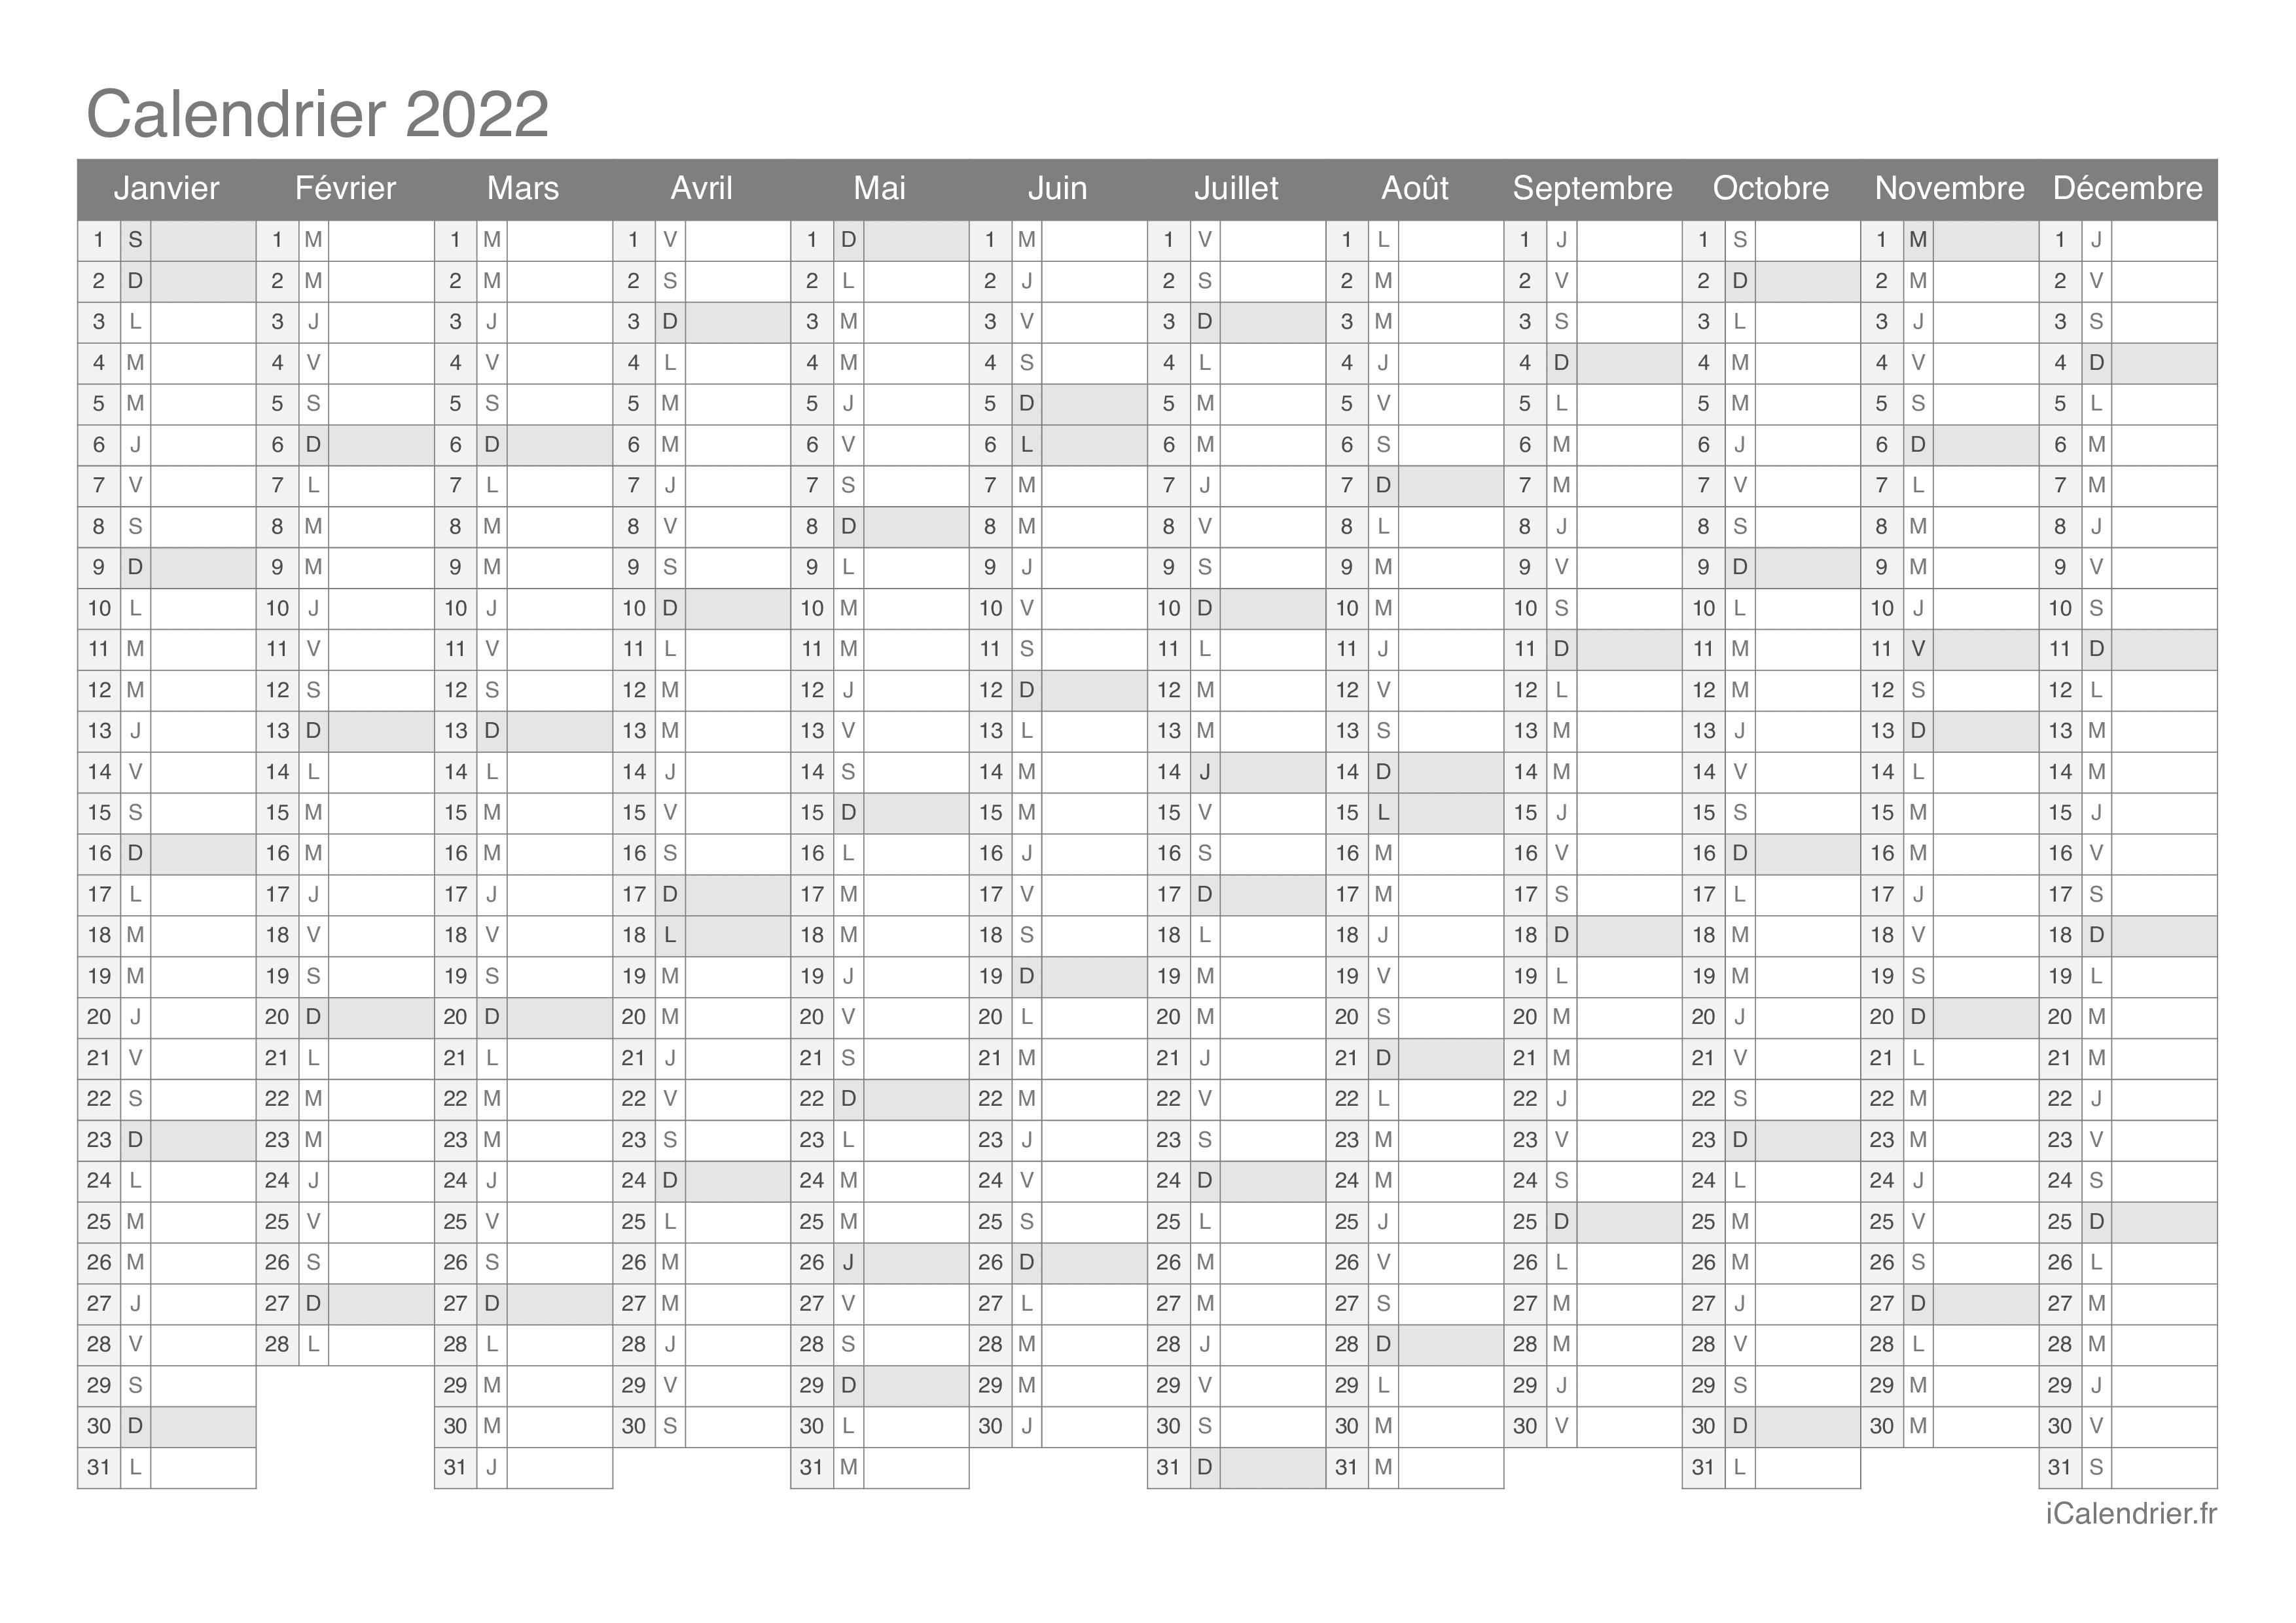 Calendrier Photo 2022 Calendrier 2022 à imprimer PDF et Excel   iCalendrier